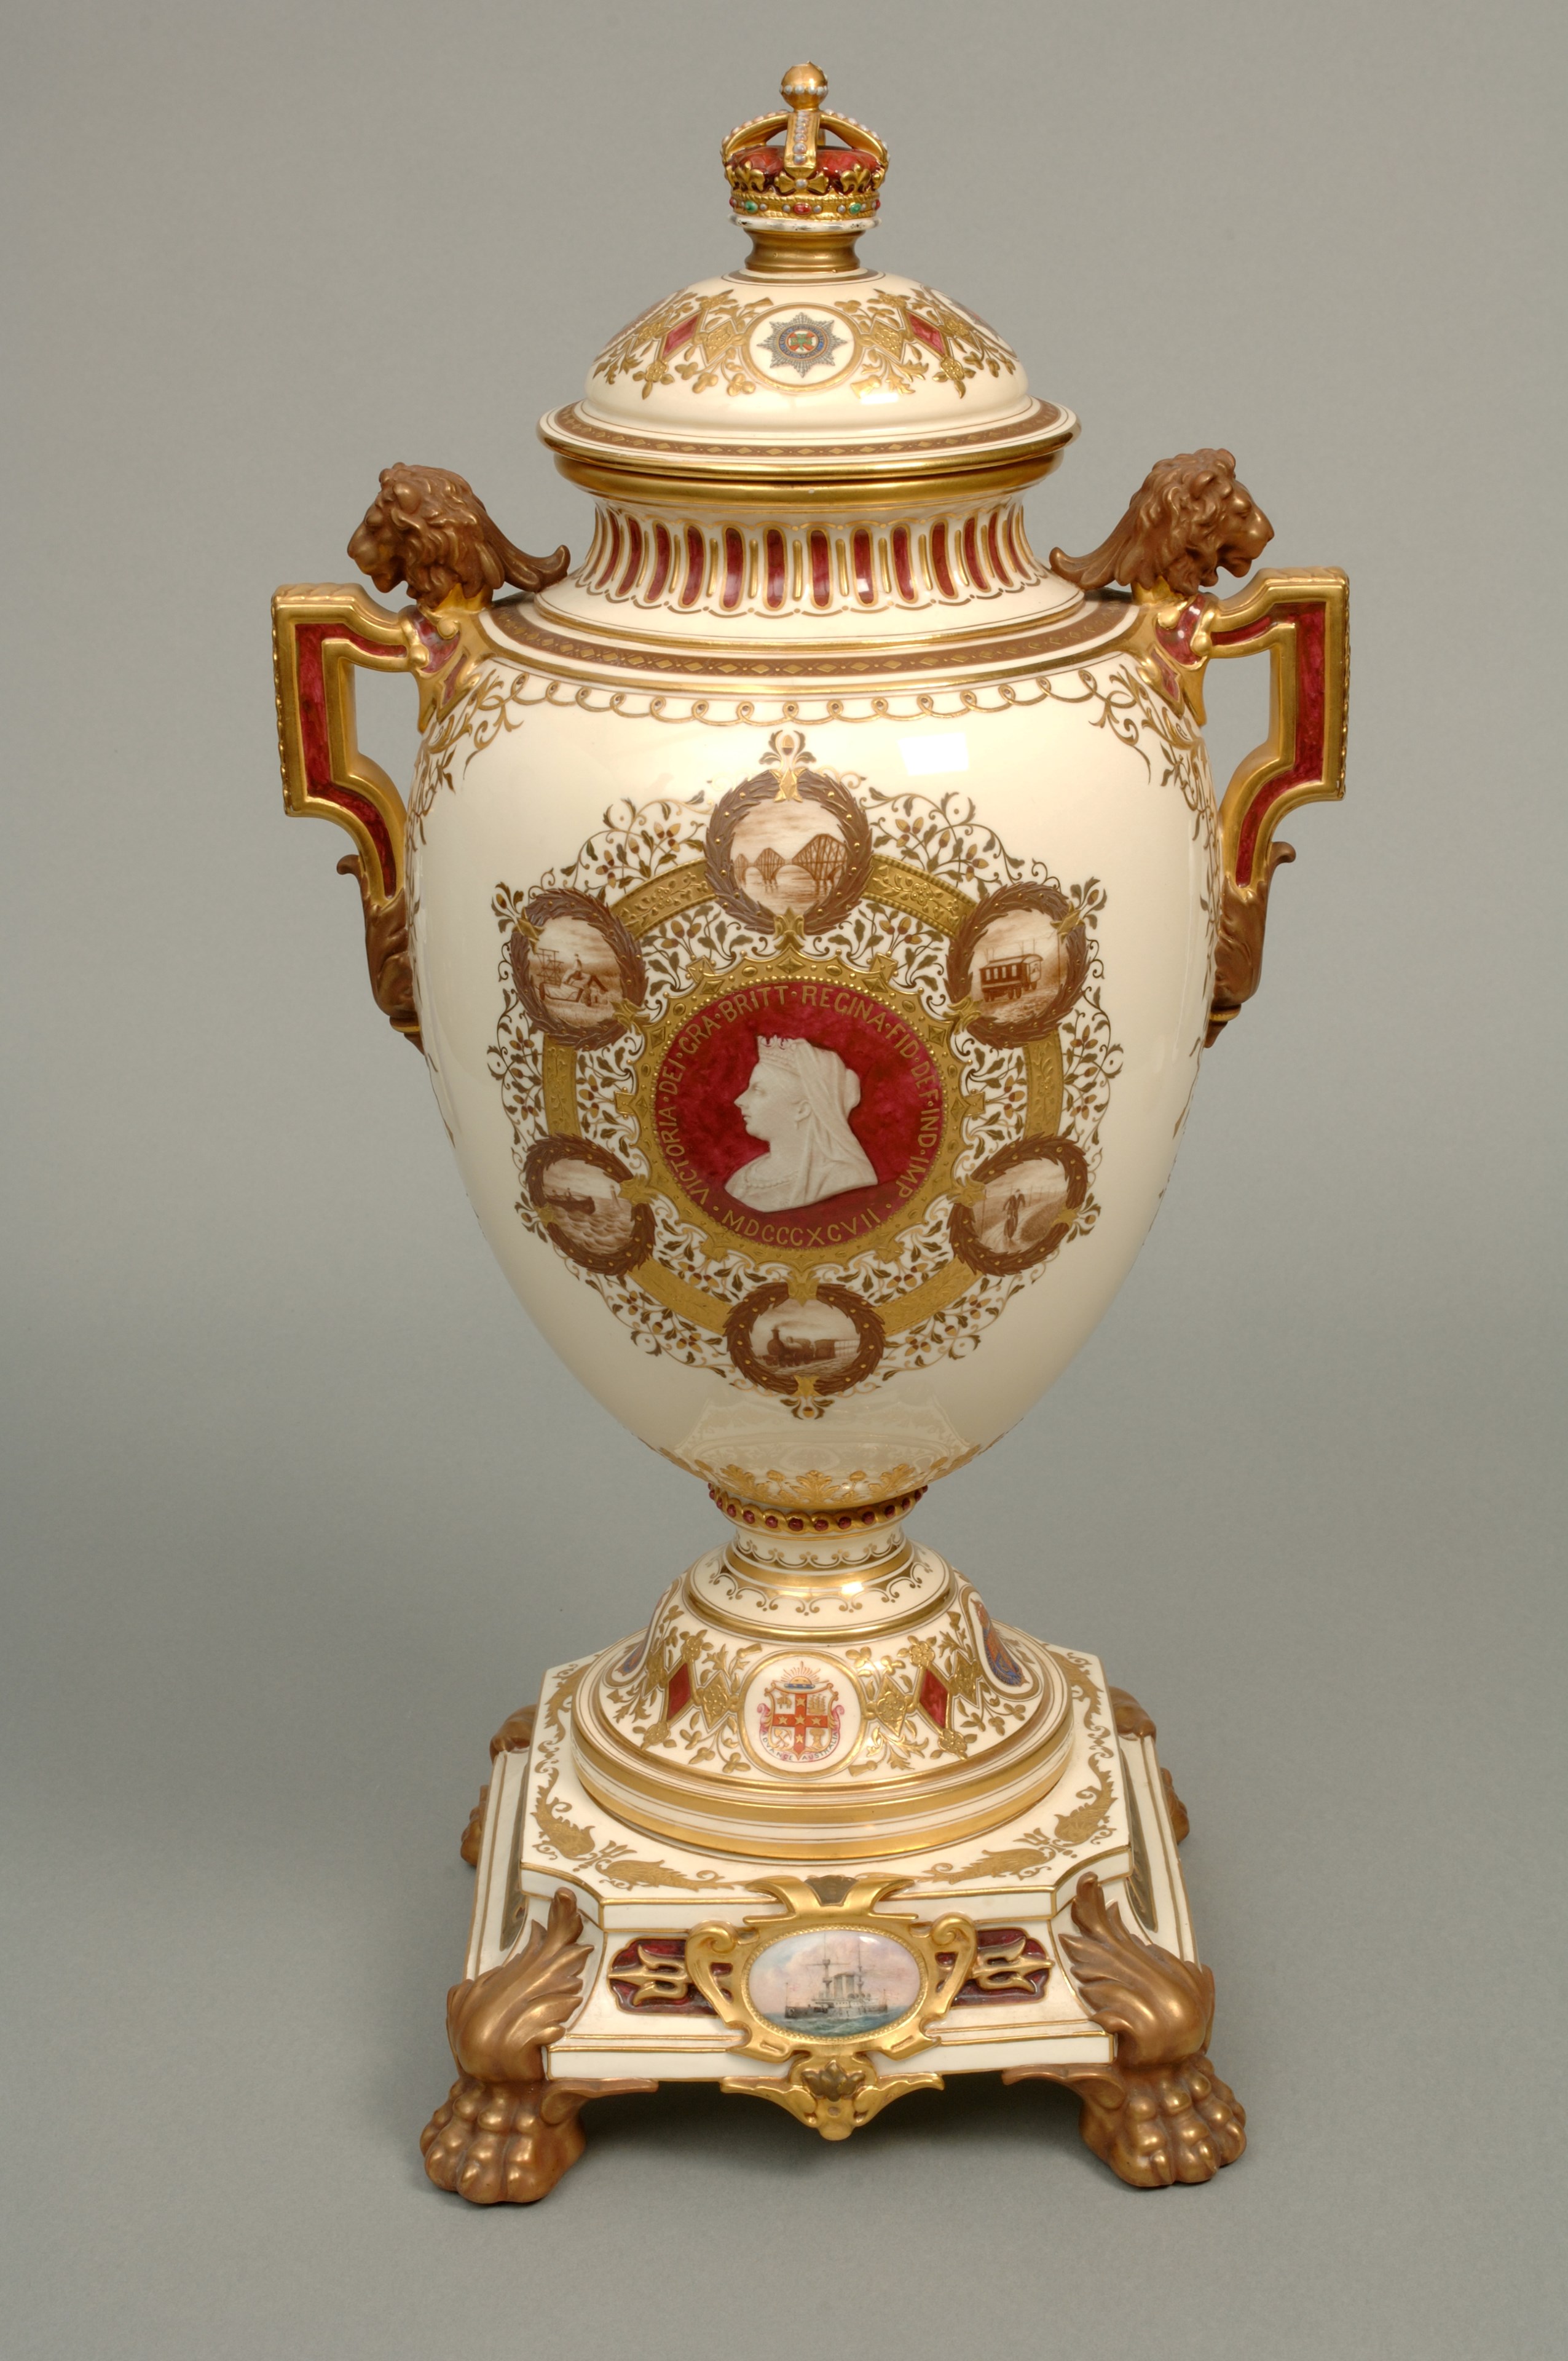 Queen Victoria's Diamond Jubilee Vase